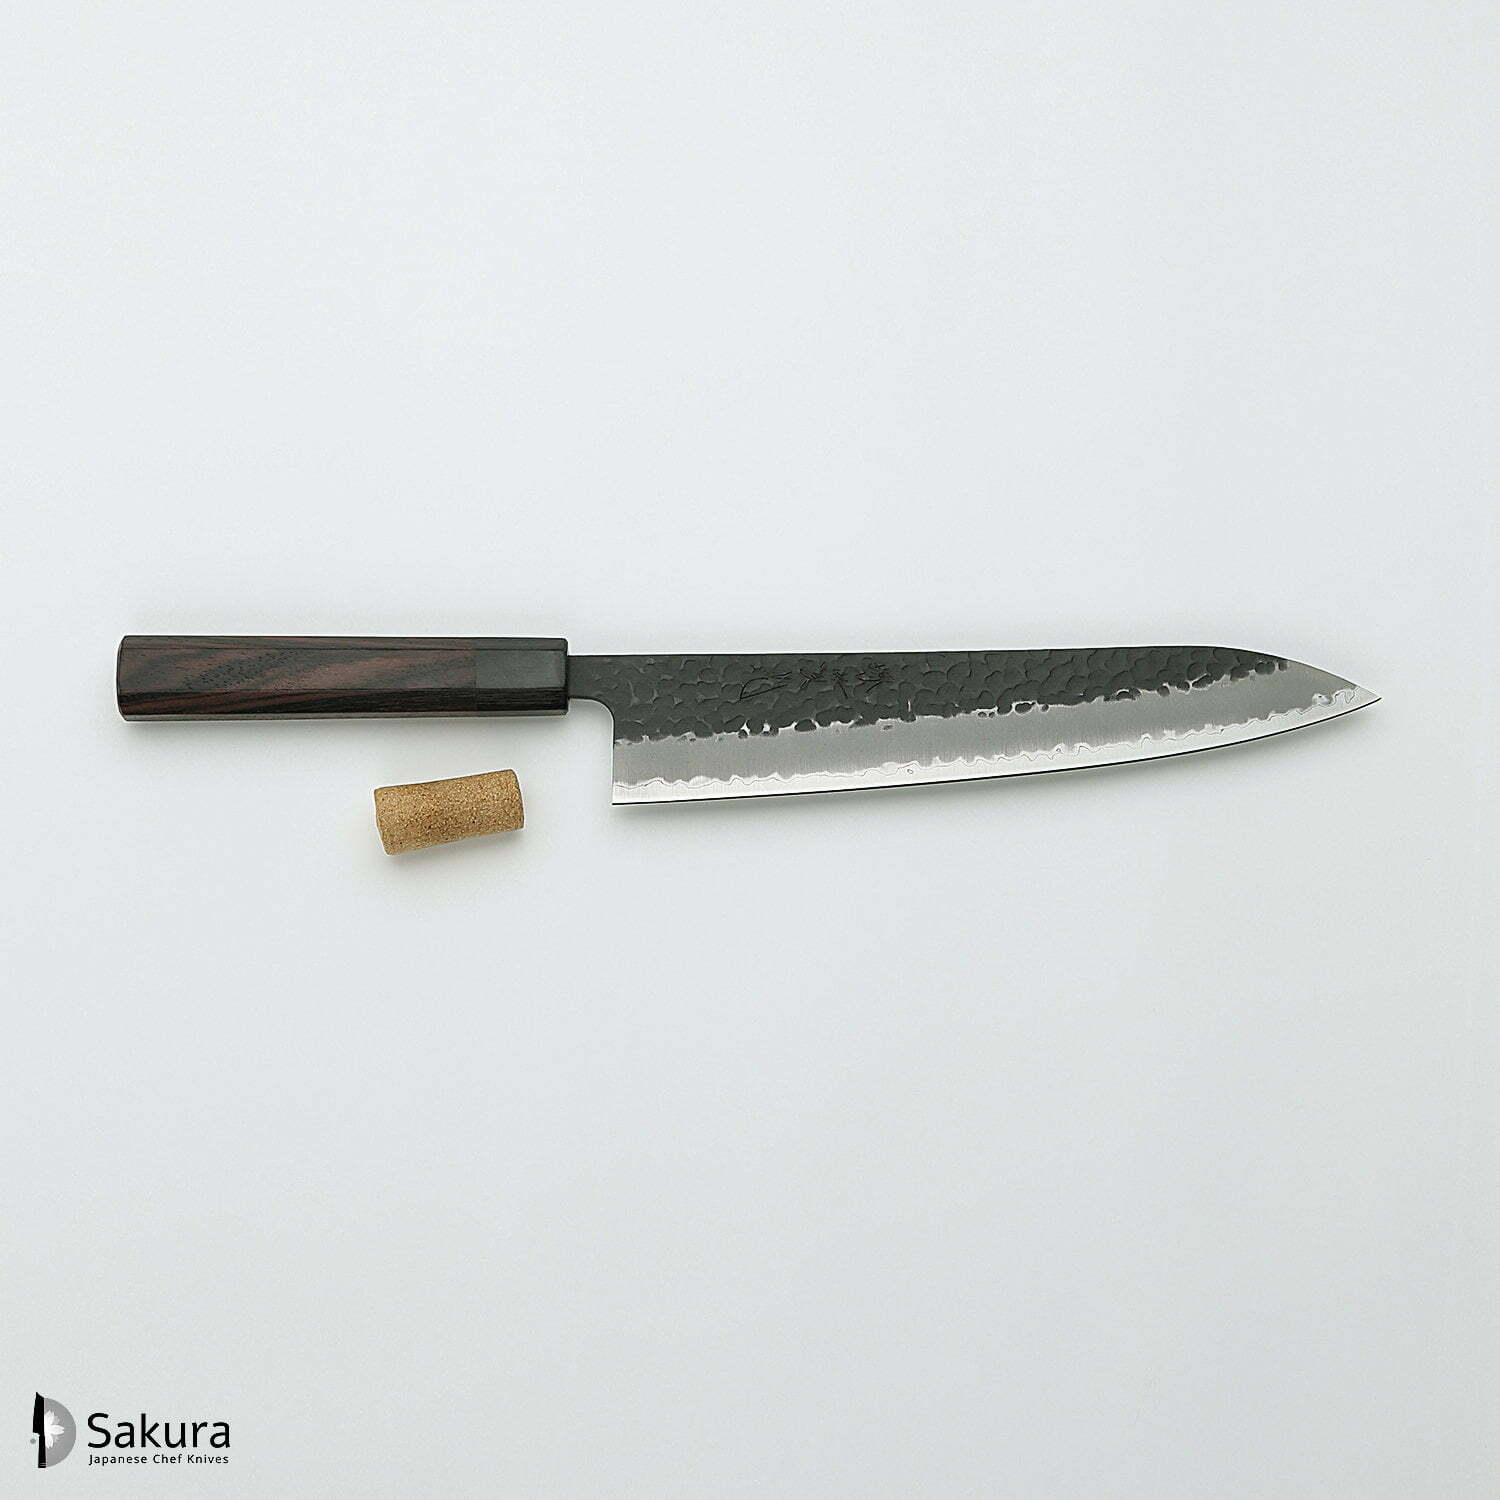 סכין שף רב-תכליתית גִּיוּטוֹ 240מ״מ מחוזקת 3 שכבות: פלדת פחמן יפנית מתקדמת מסוג Aogami Super עטופה פלדת אל-חלד גימור קורואיצ׳י שחור עם ריקוע פטיש ג׳יקו סאקאיי יפן